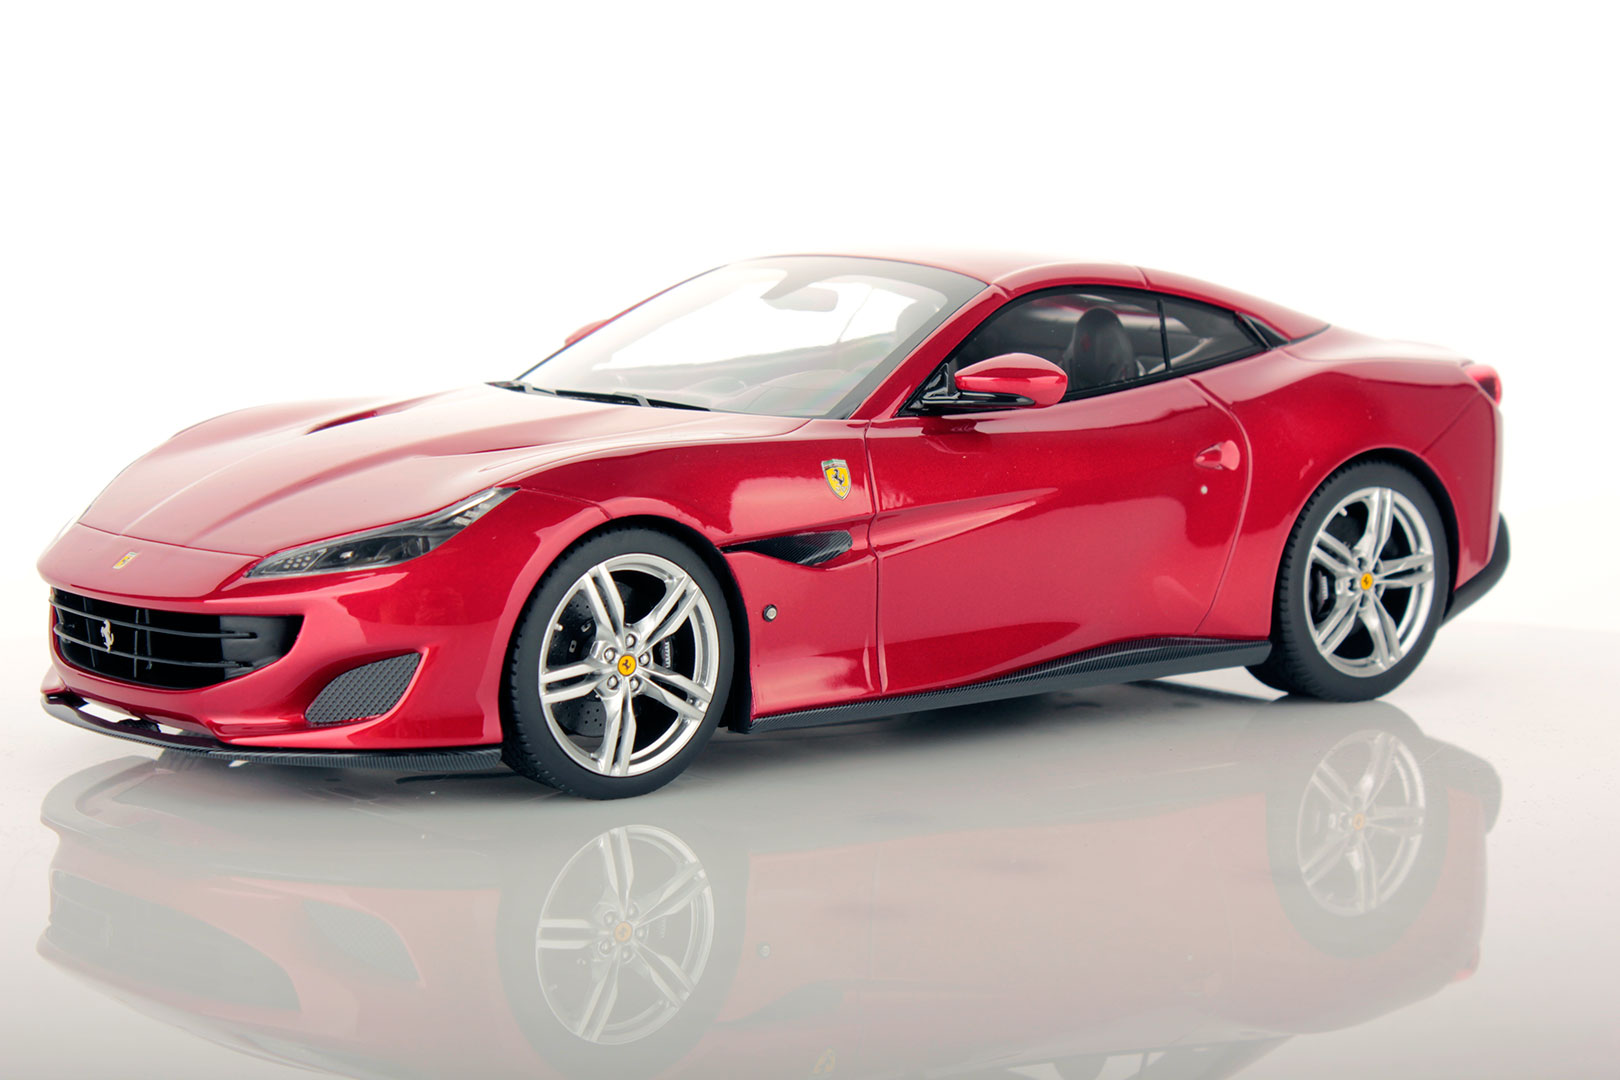 Ferrari - immagine della macchina